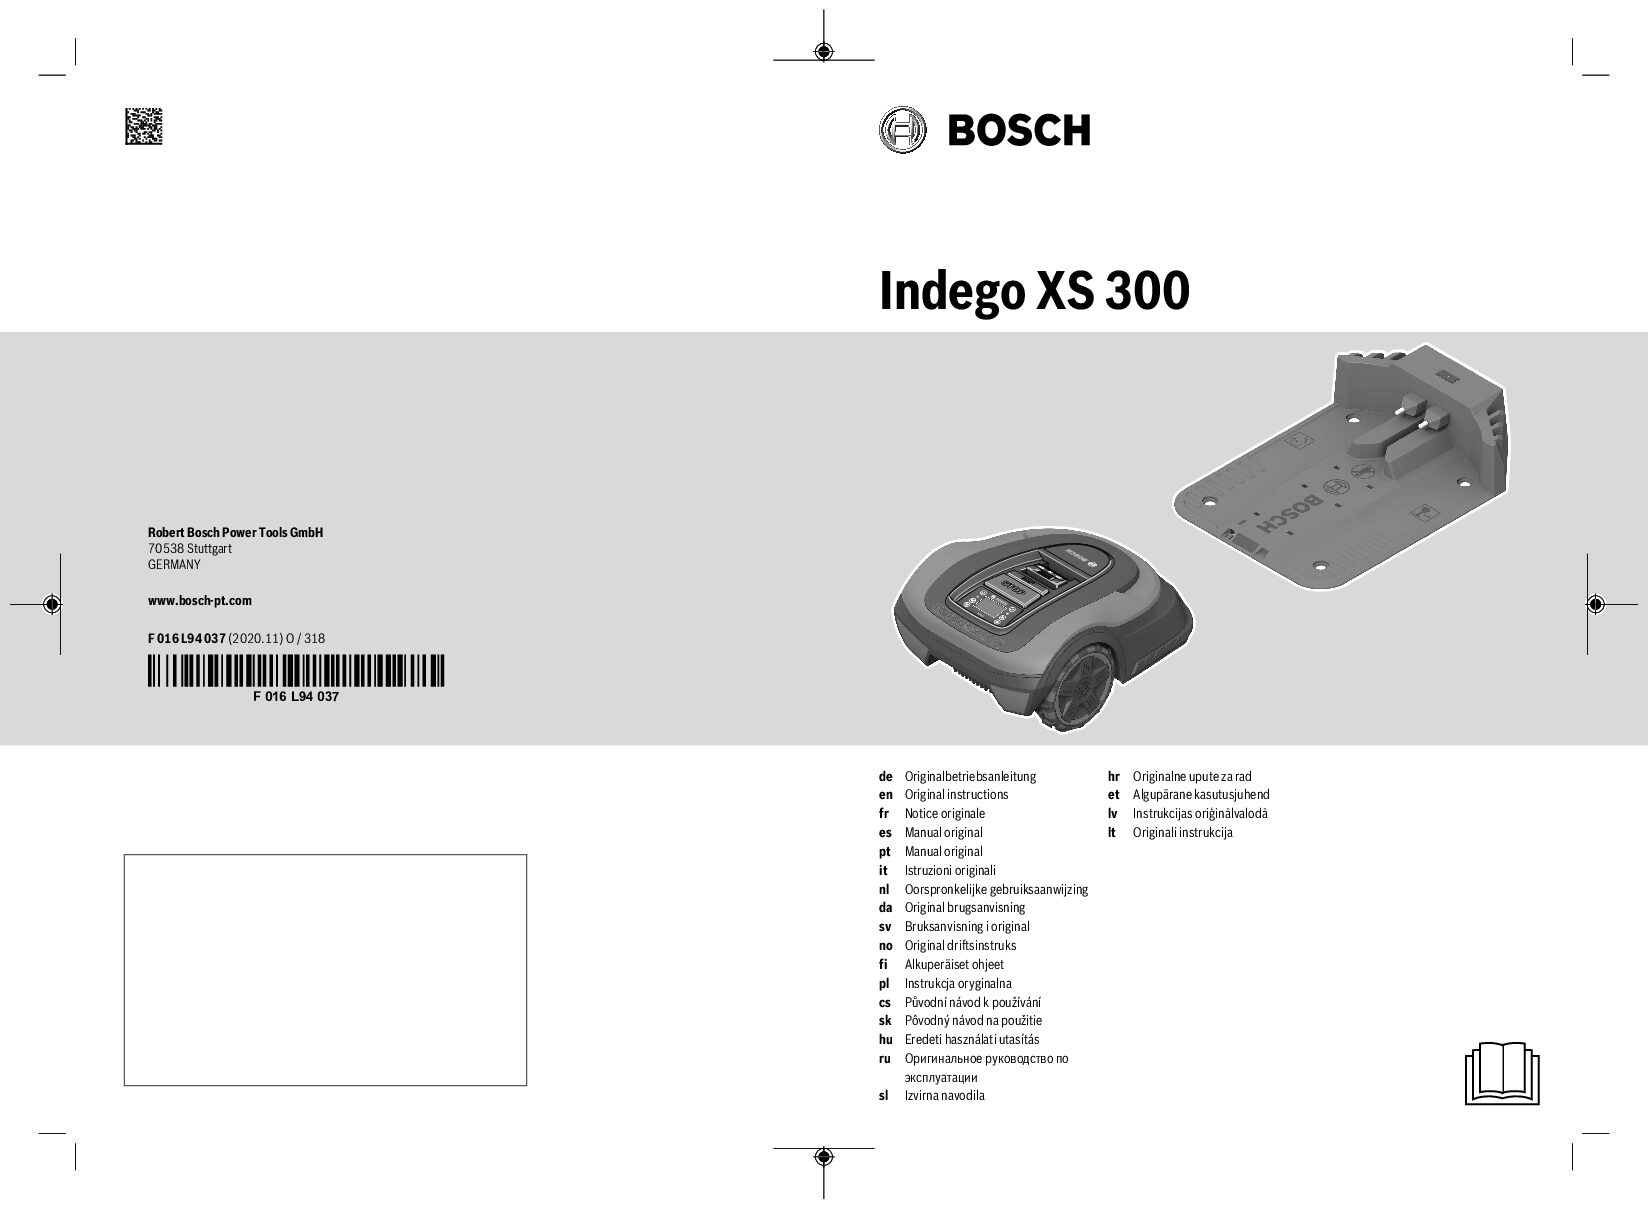 Bosch Indego XS 300 Bedienungsanleitung